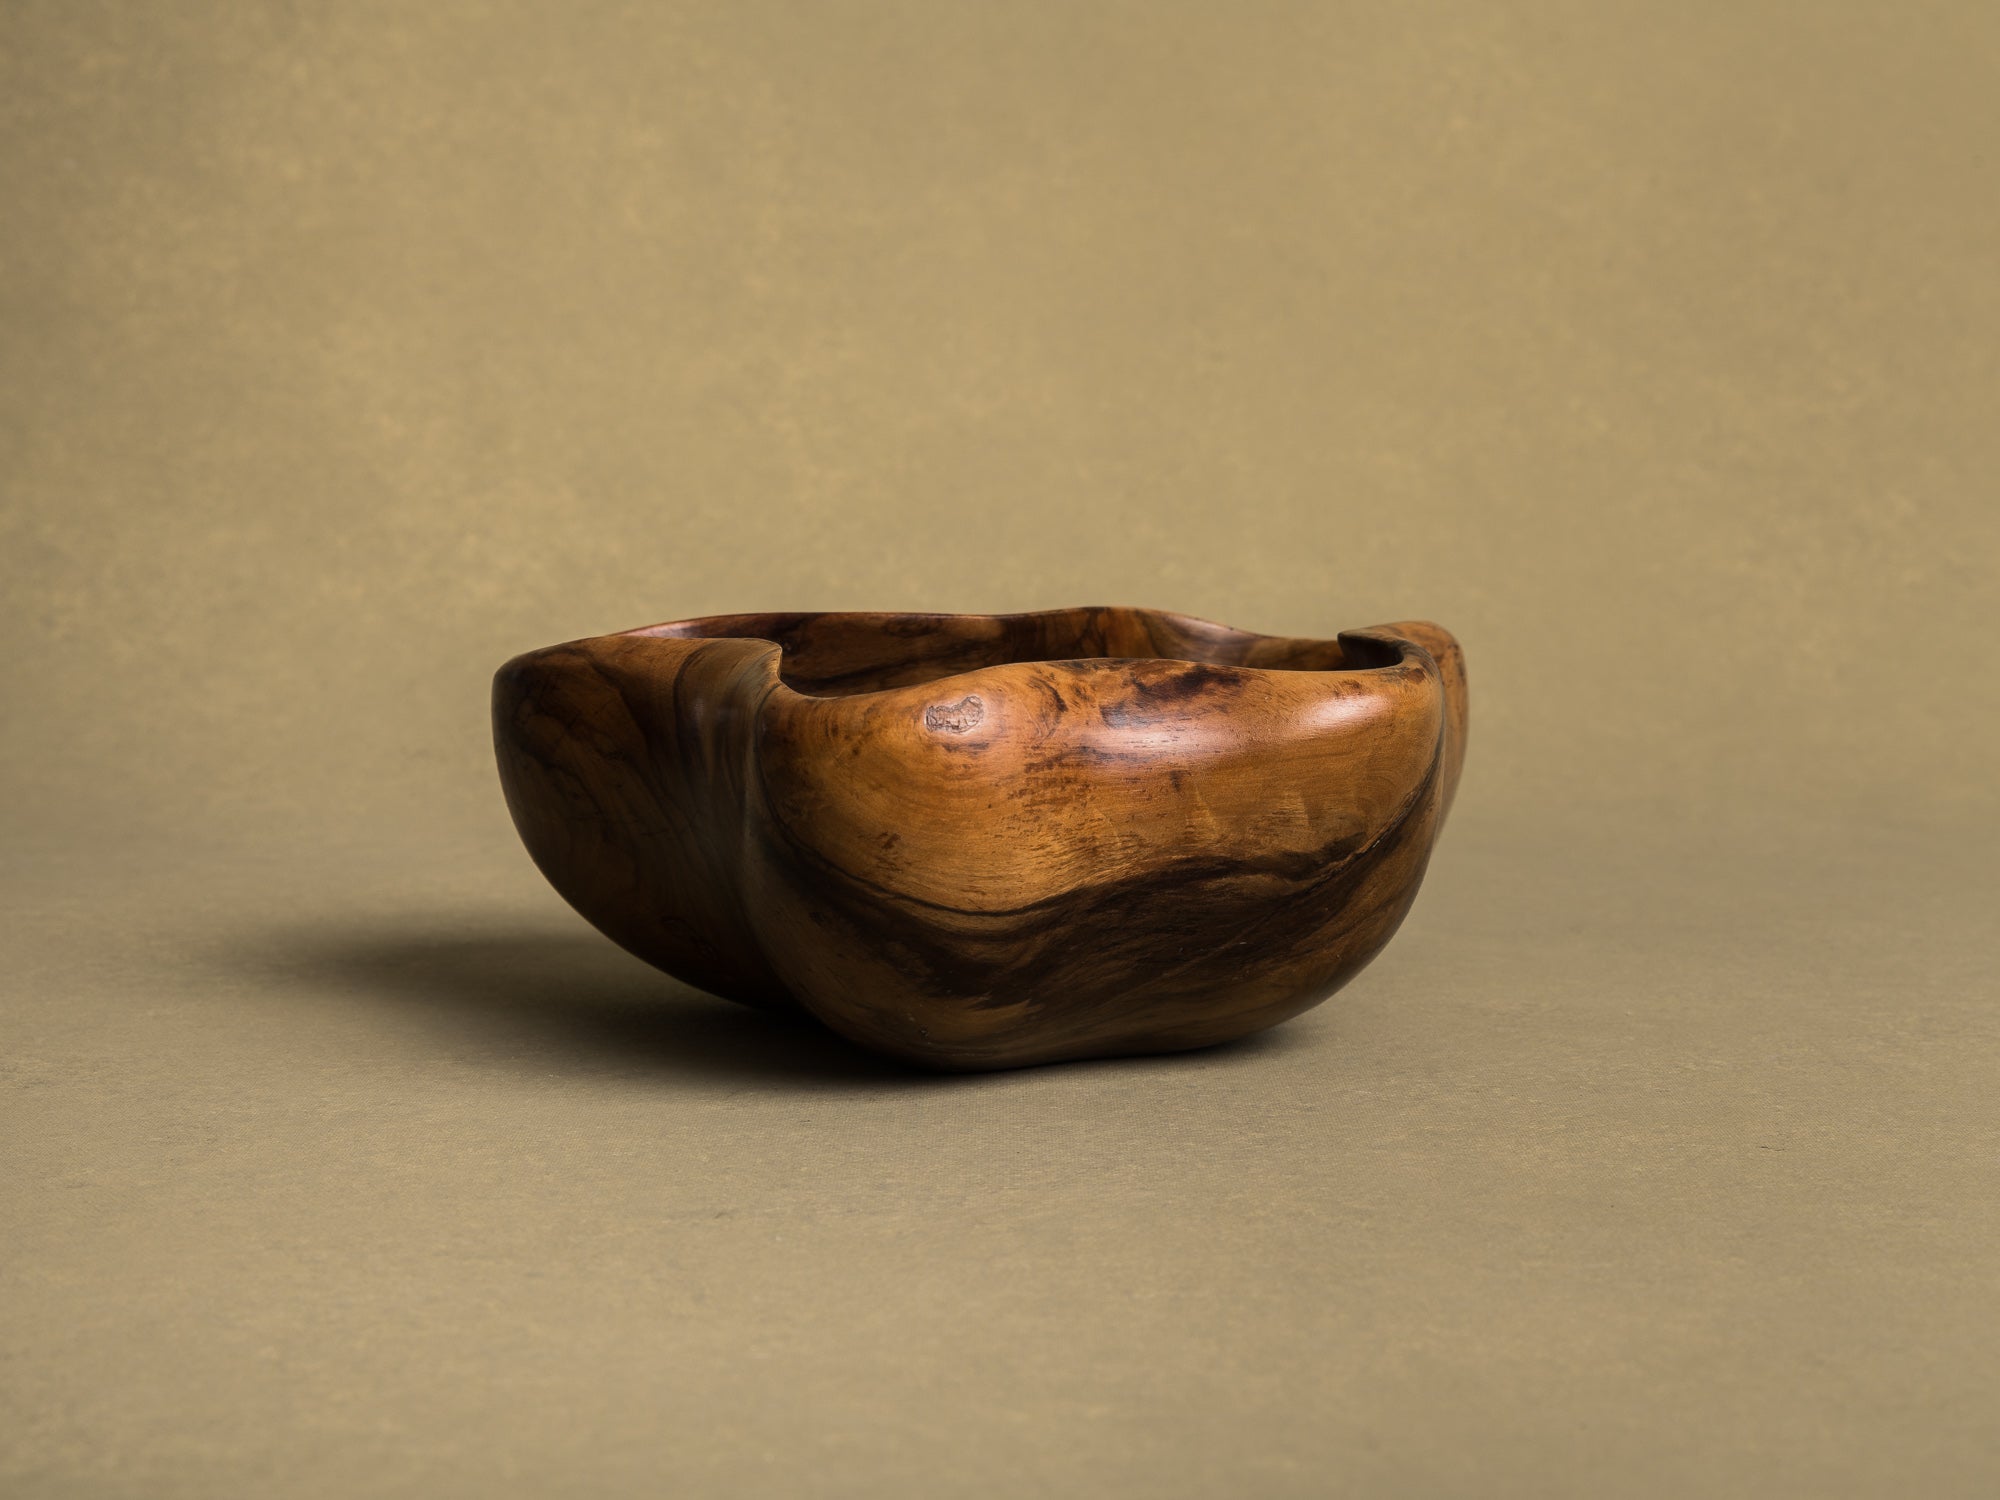 Coupe monoxyle de forme libre en bois d'olivier de l'atelier Falfer, Espagne (vers 1960)..Falfer free form biomorphic wooden olive bowl, Spain (circa 1960)